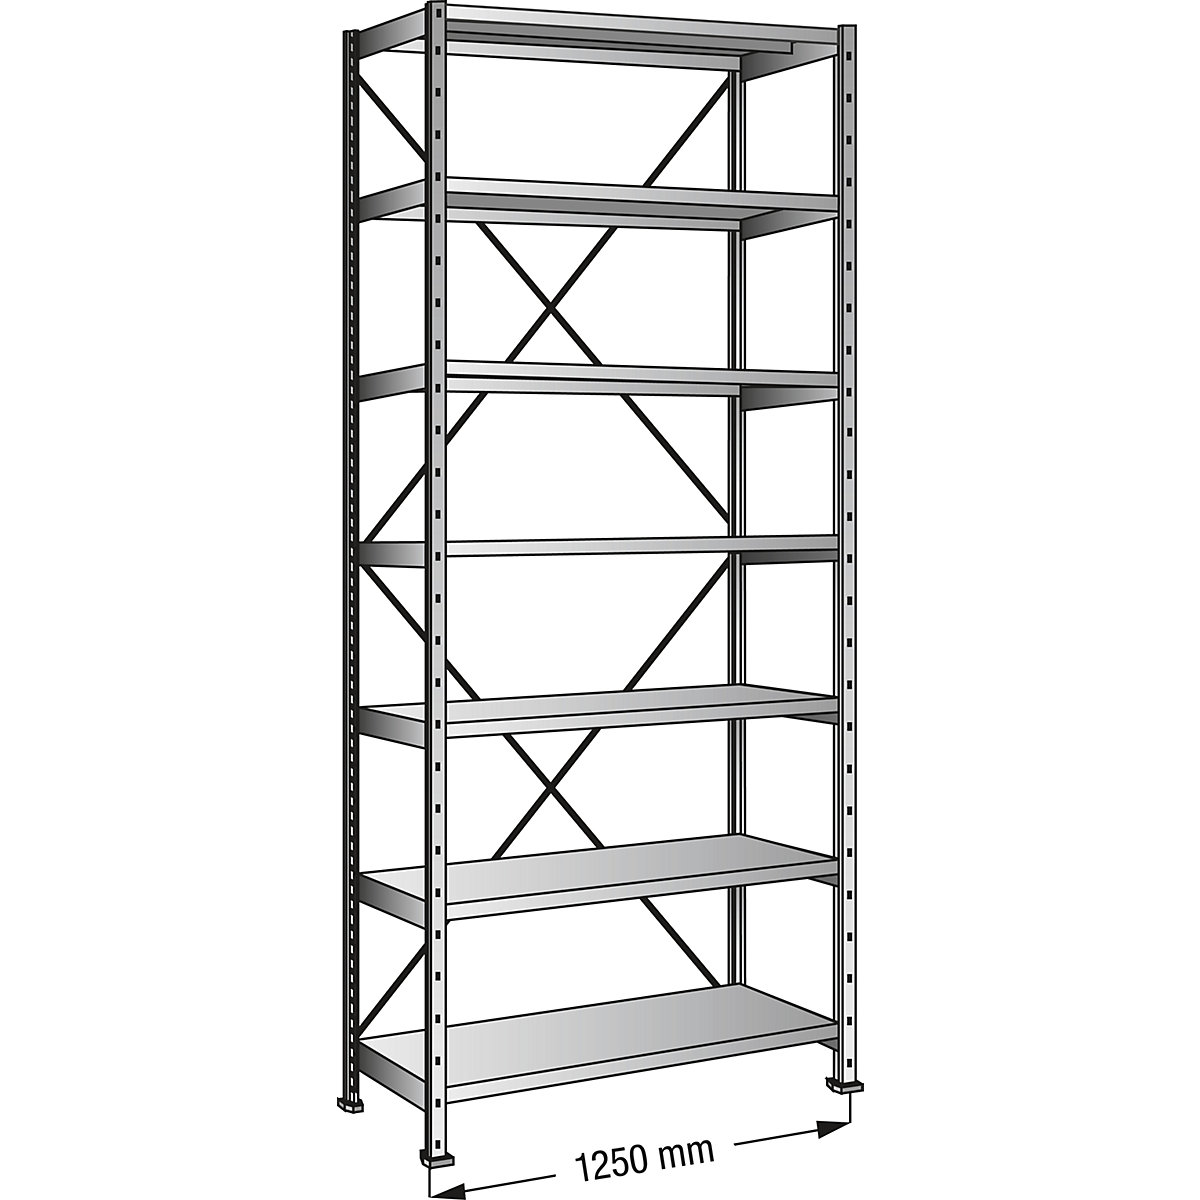 Boltless shelving unit, zinc plated, 7 shelves, height 2640 mm, shelf width 1200 mm, depth 1000 mm, standard shelf unit